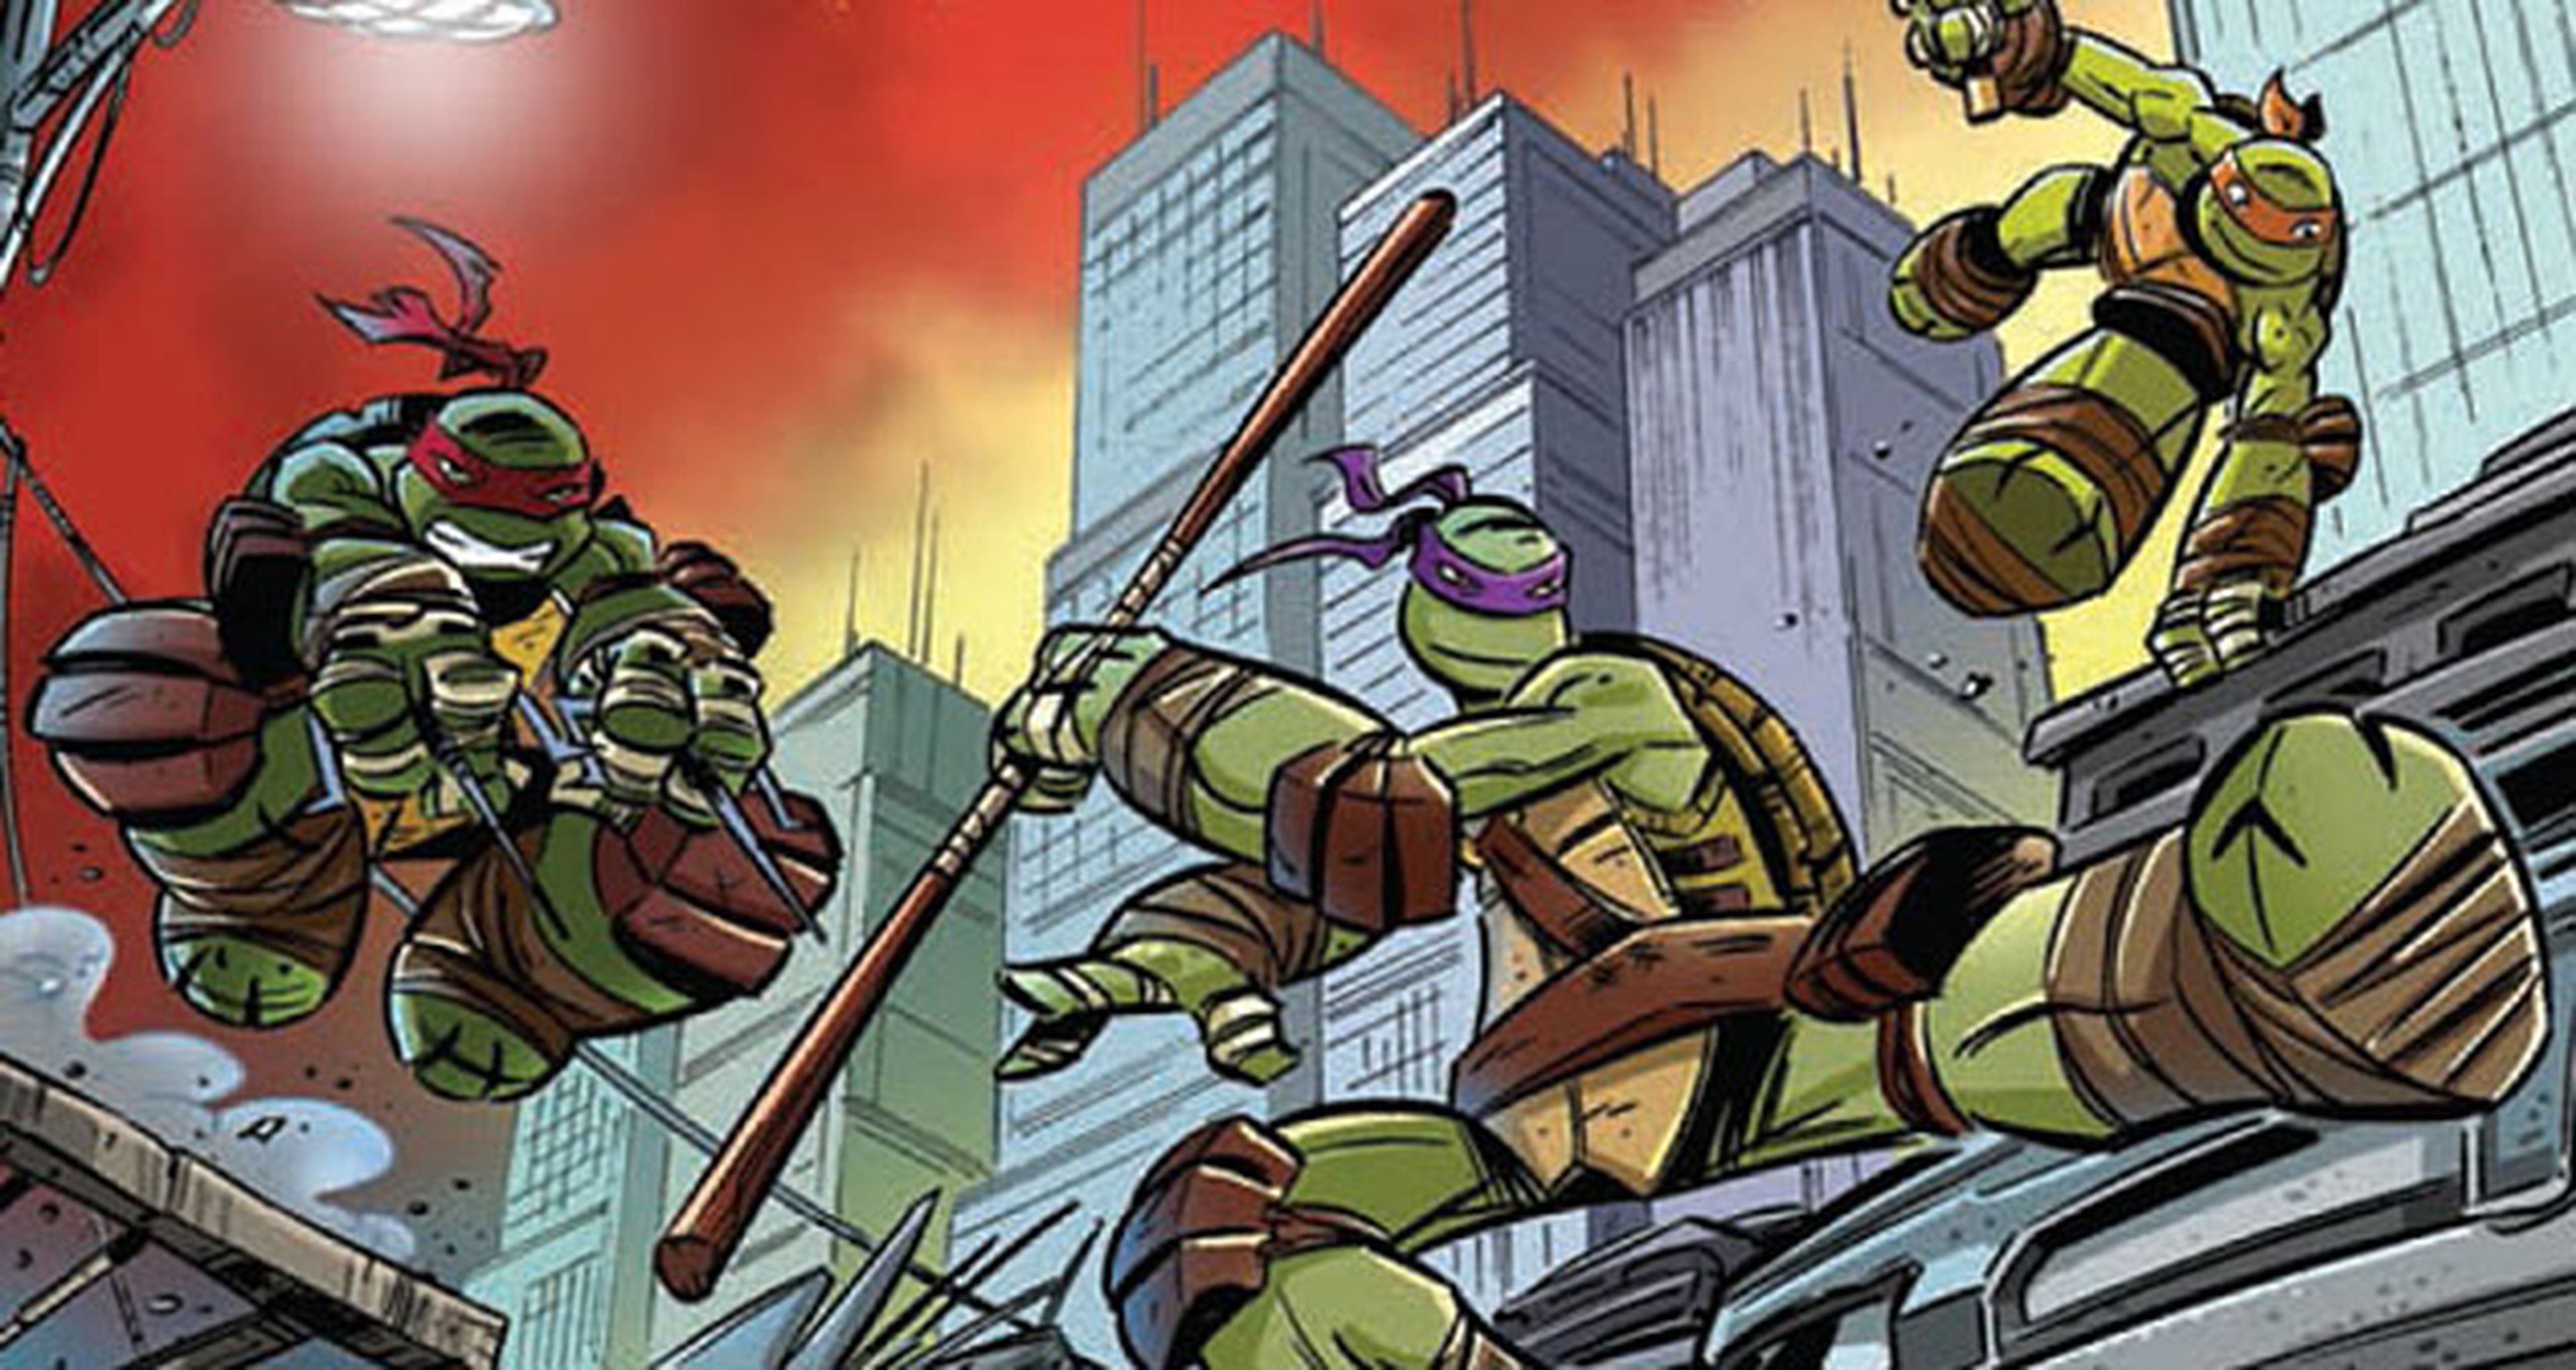 EEUU: Sale un nuevo cómic de las Tortugas Ninja